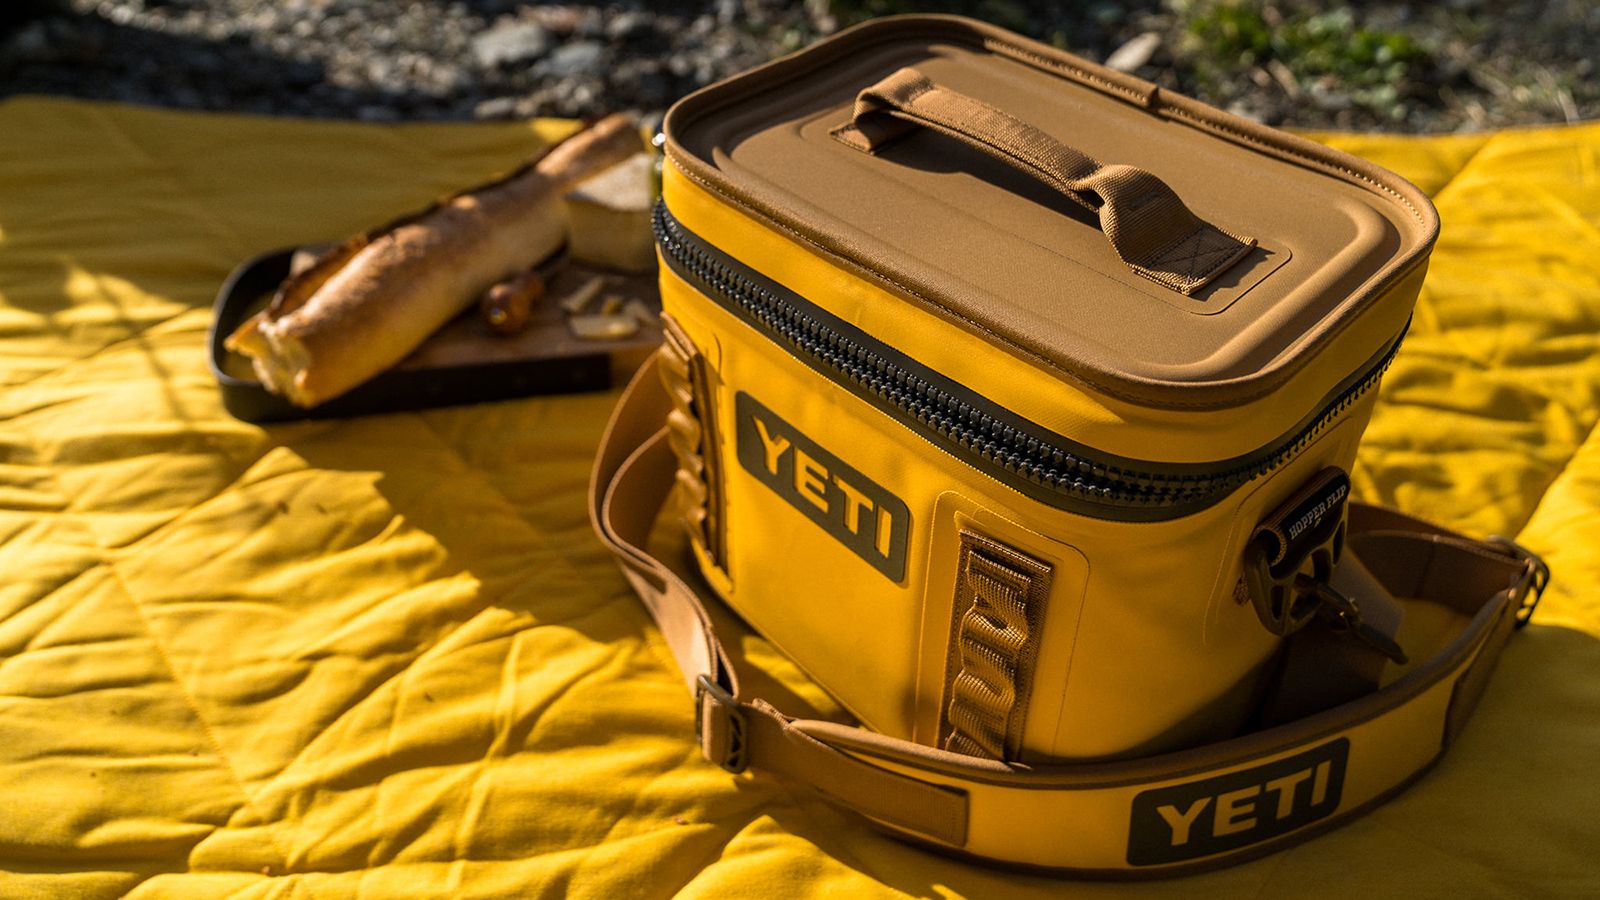 Yeti - Tundra 45 Cooler Alpine Yellow